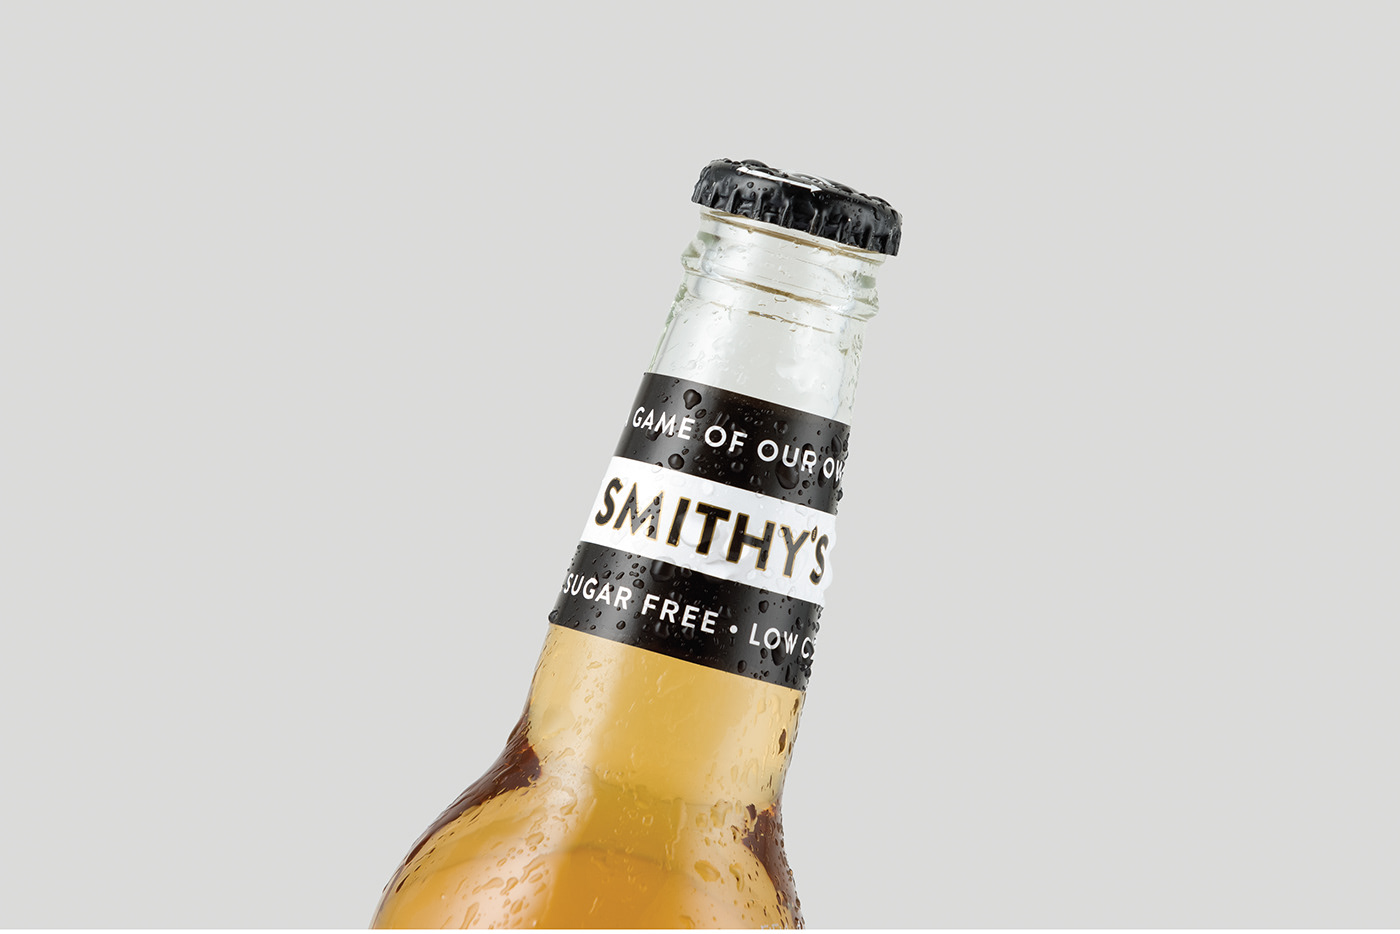 afl aussie rules australian beer beer can beer design draught beer drinks football lager Packaging